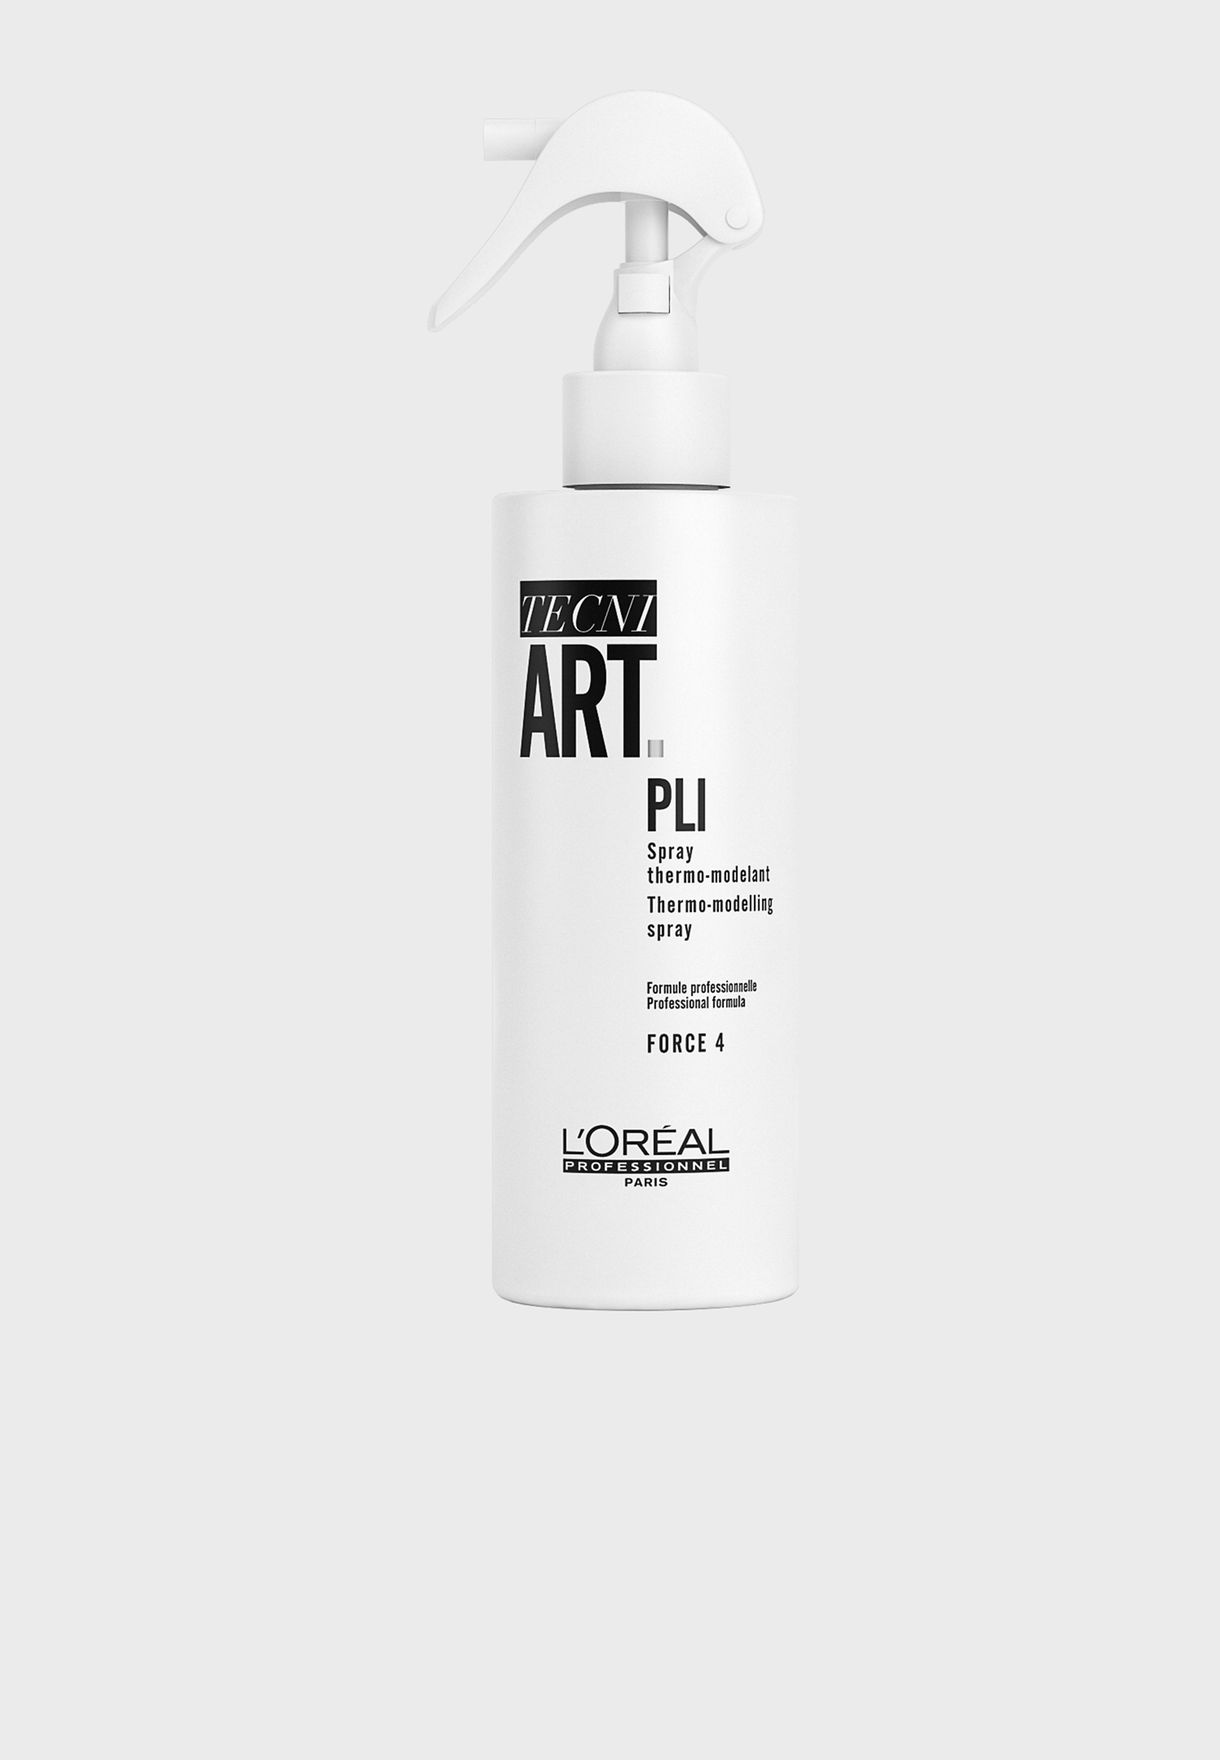 Tecni Art - PLI Shaper Spray